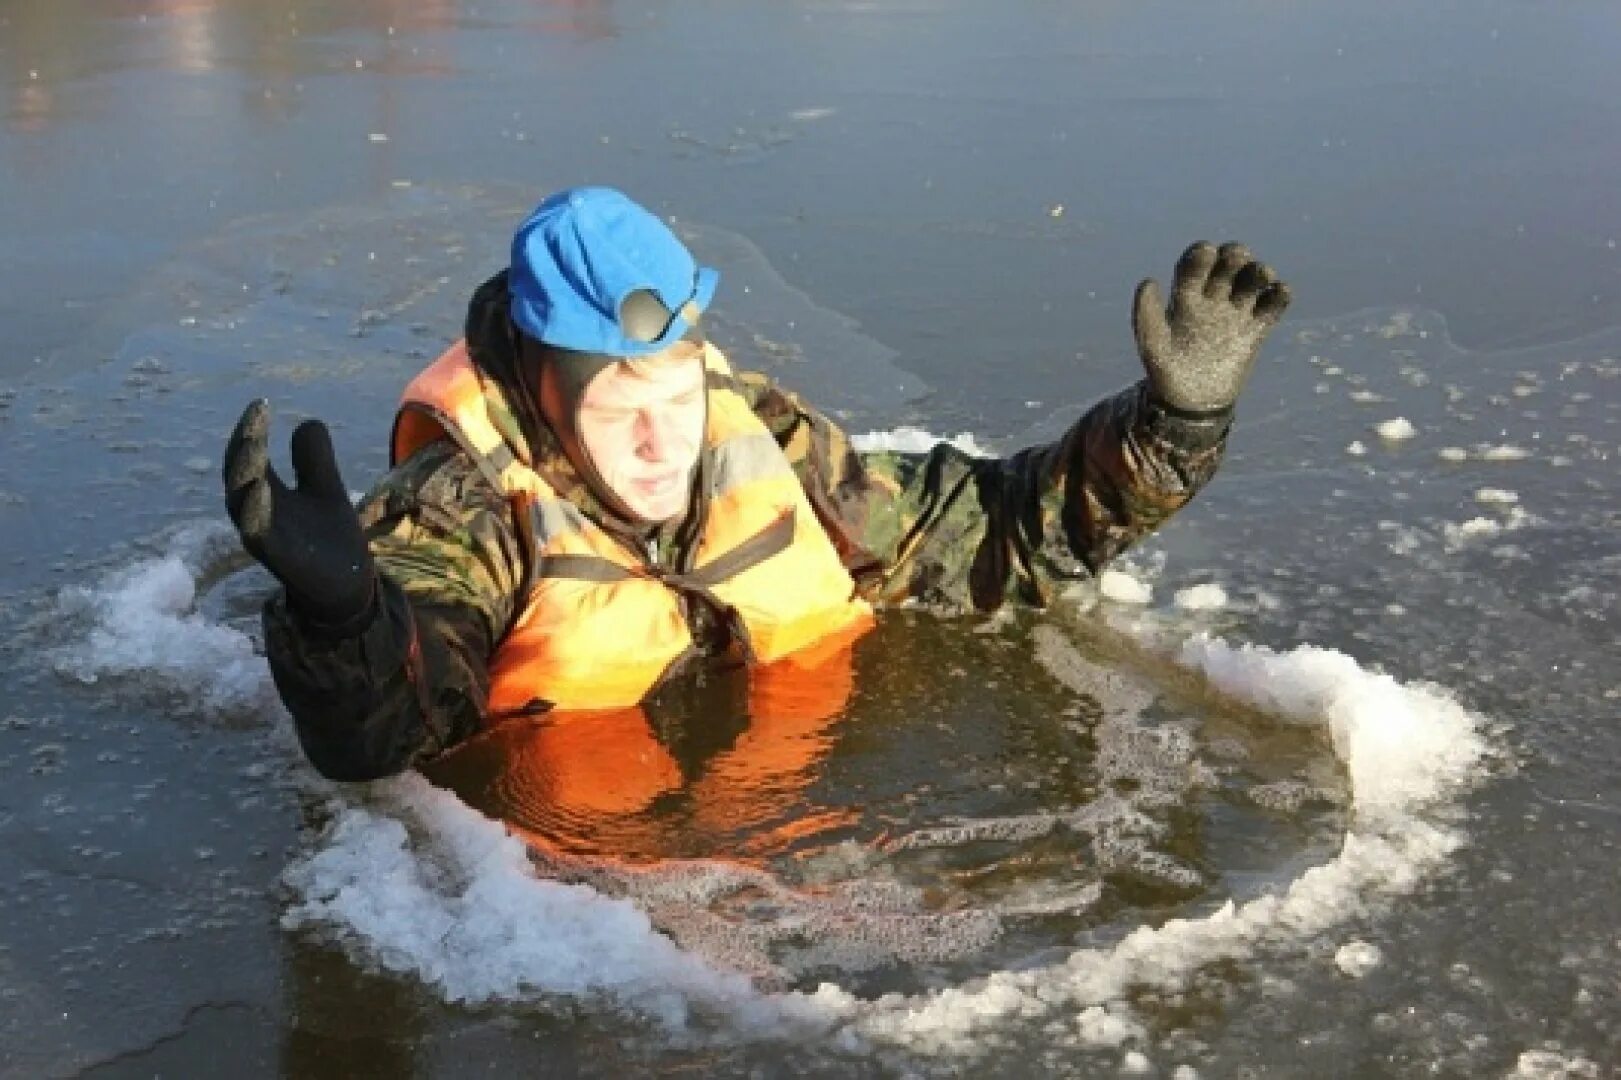 Рыбалка в холодной воде. Человек в холодной воде. Сотрудник МЧС лед вода. Занятие с детьми ГИМС.